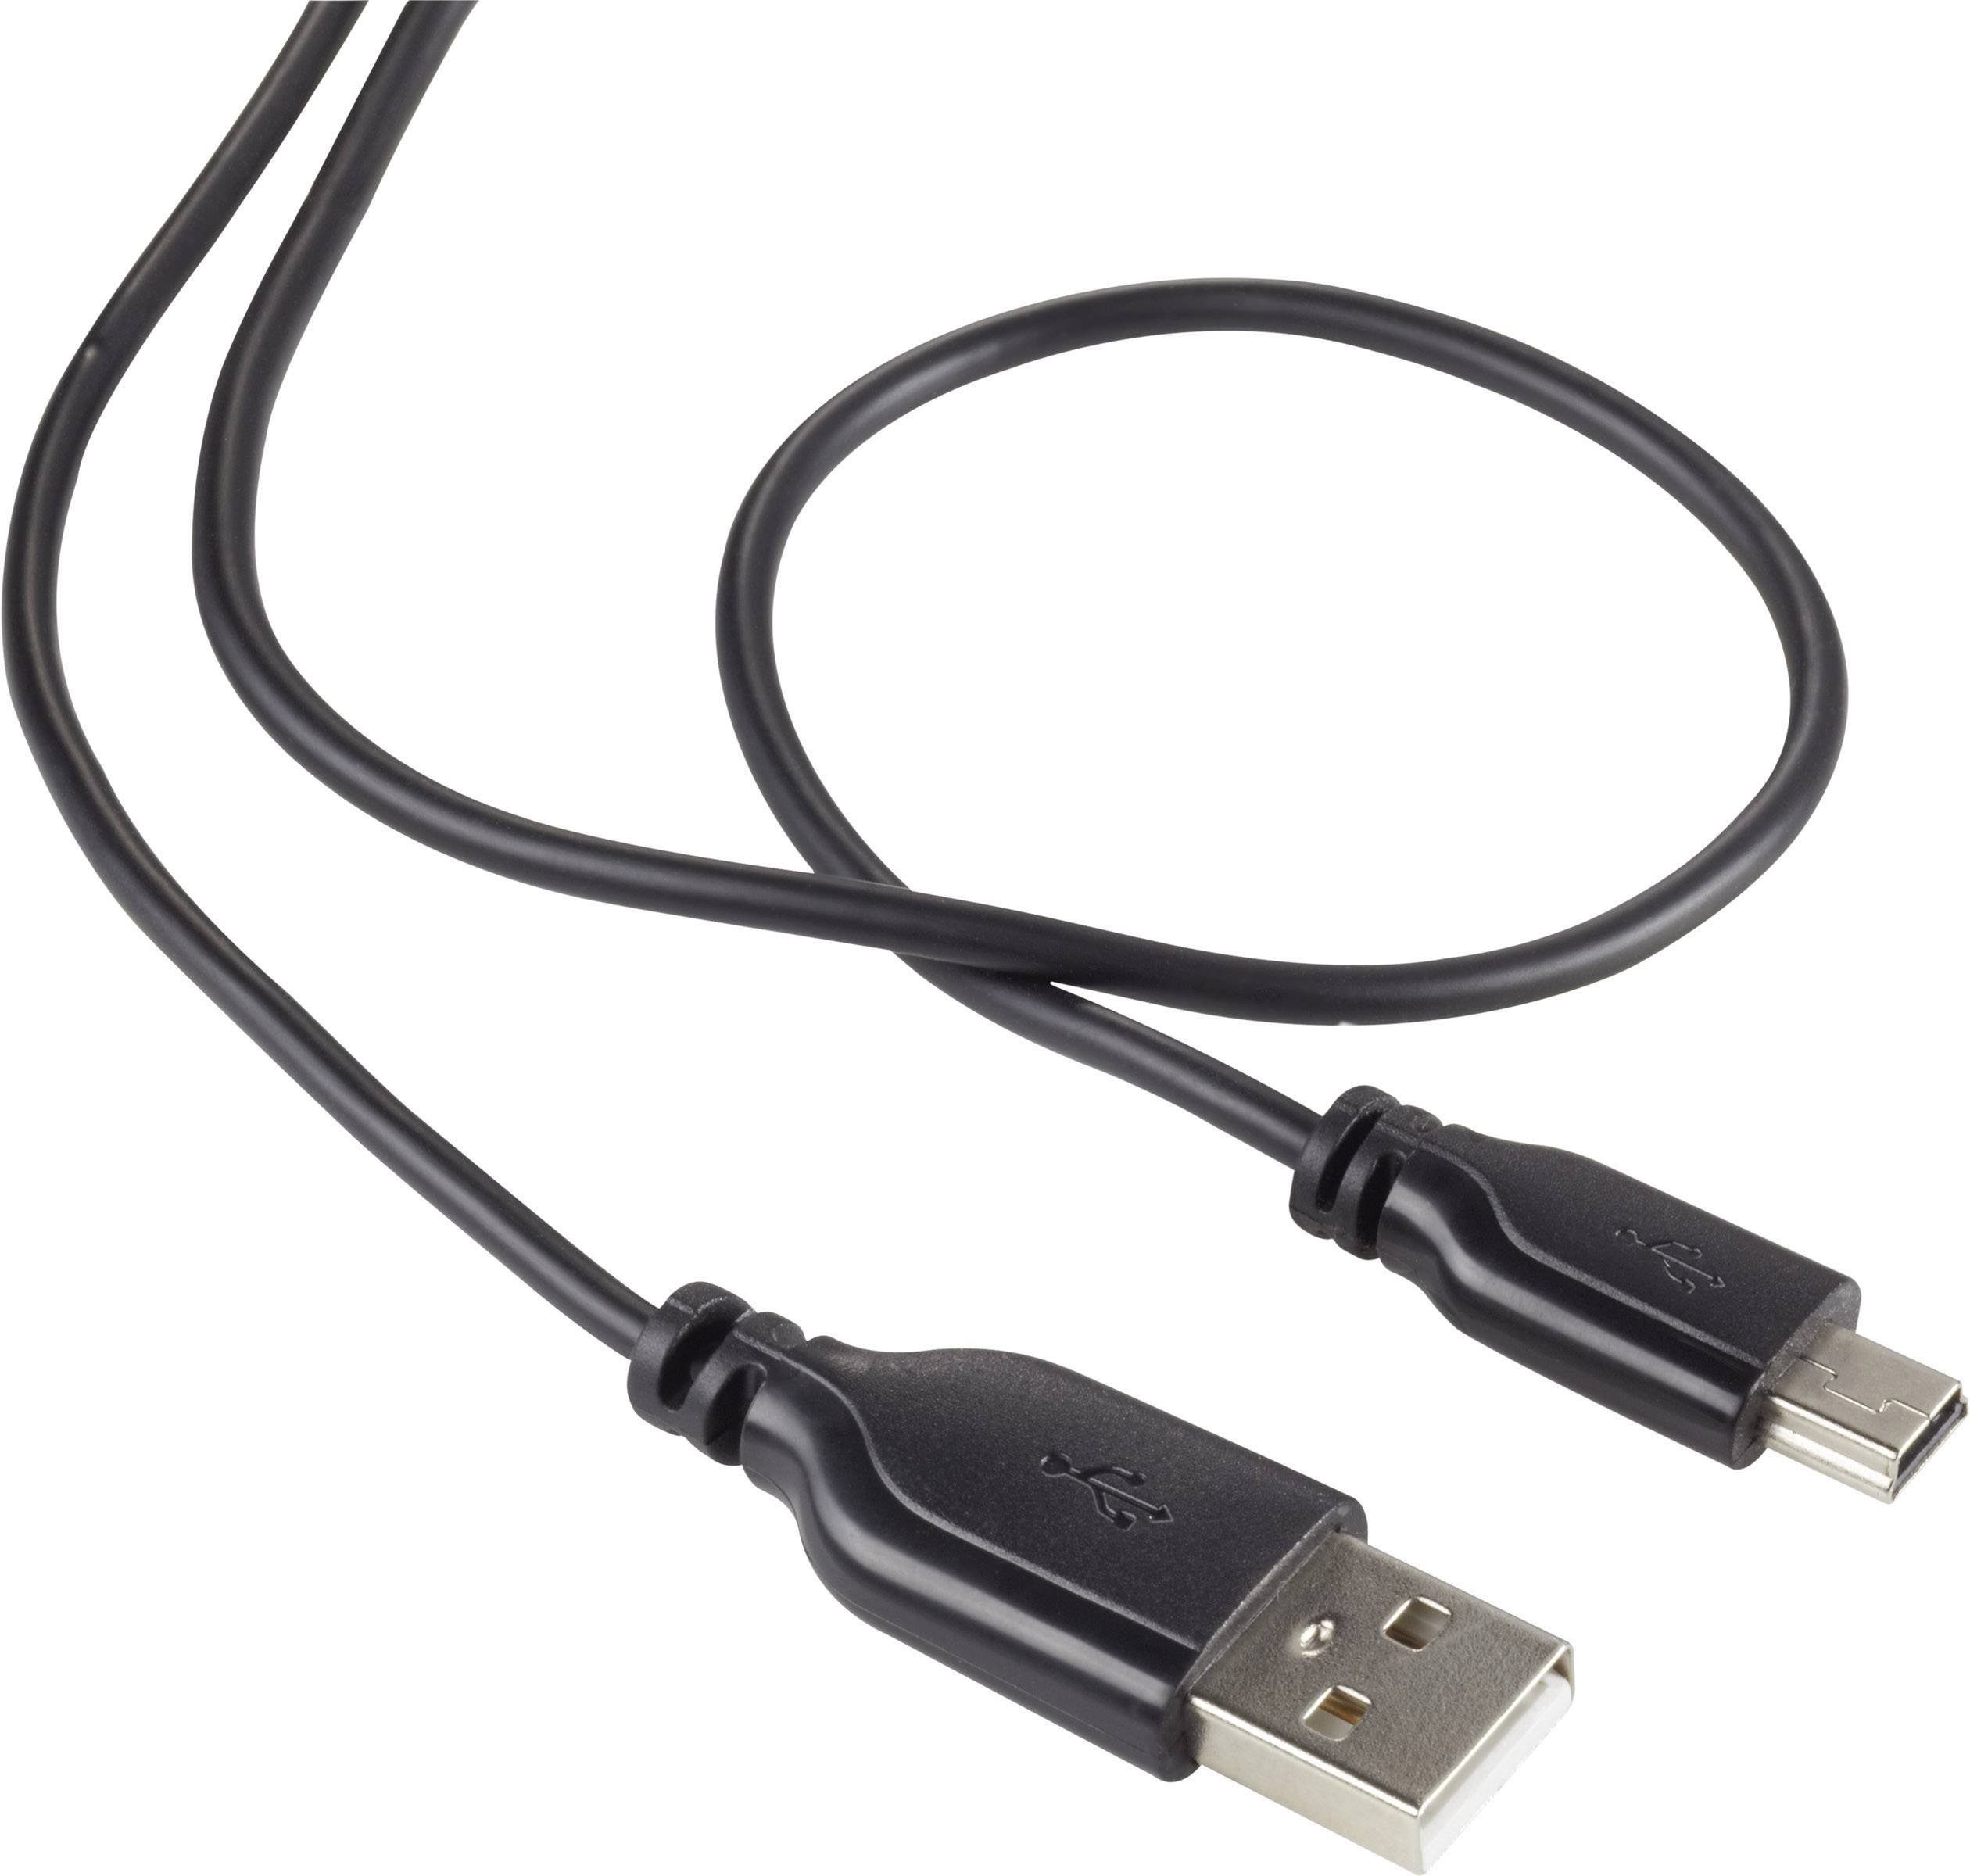 CONRAD Renkforce USB 2.0 Kabel [1x USB 2.0 Stecker A - 1x USB 2.0 Stecker Mini-B] 1 m Schwarz SuperS